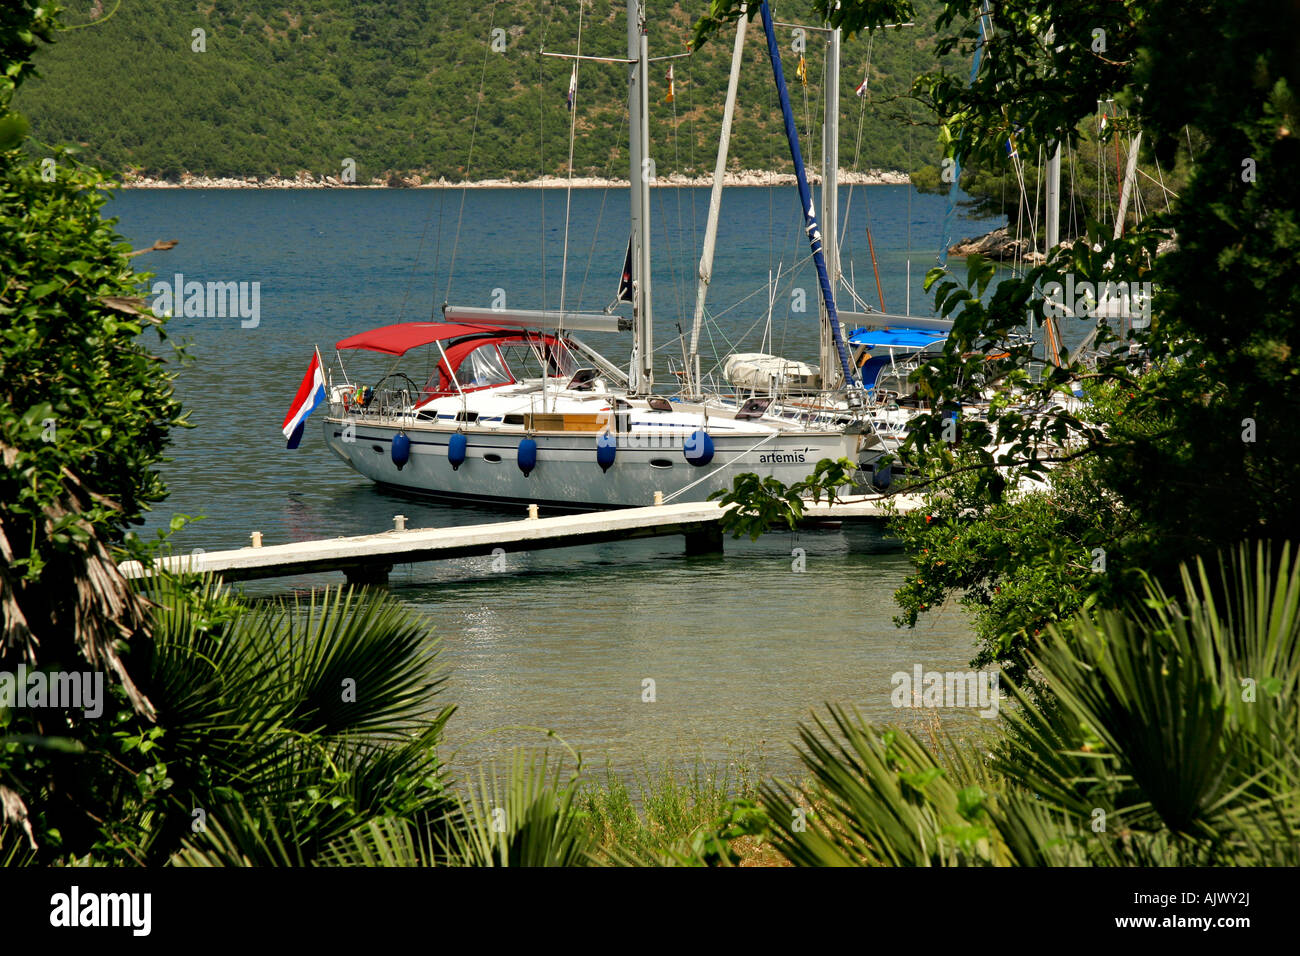 HRV Kroatien Dubrovnik, Segelyachten am Steg in Sued Dalmatien | Croazia, yacht a vela presso la passerella in Sud Dalmatien Foto Stock